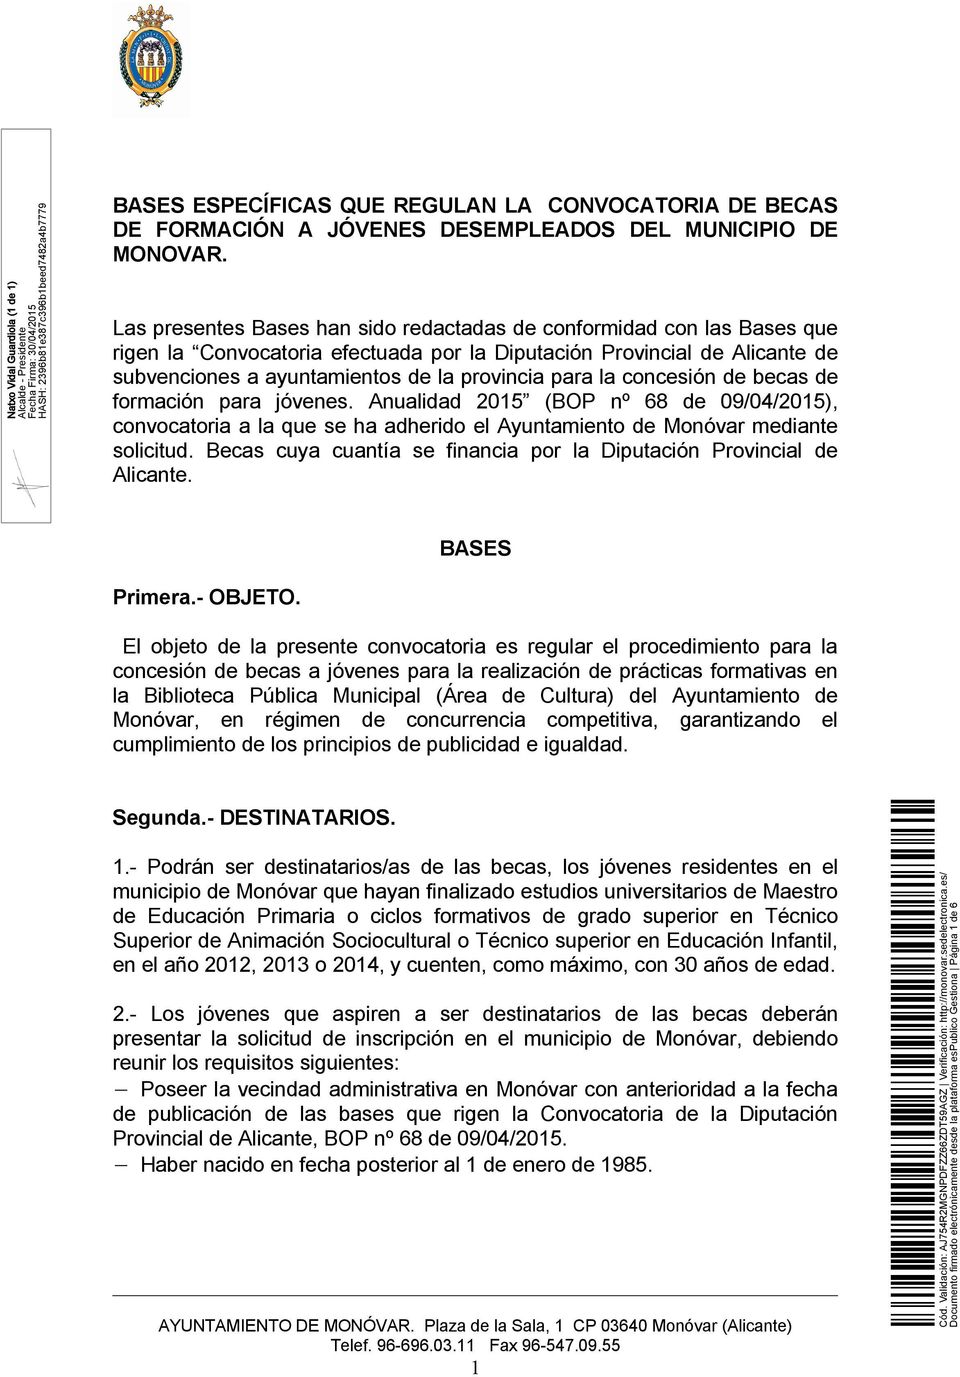 la concesión de becas de formación para jóvenes. Anualidad 2015 (BOP nº 68 de 09/04/2015), convocatoria a la que se ha adherido el Ayuntamiento de Monóvar mediante solicitud.